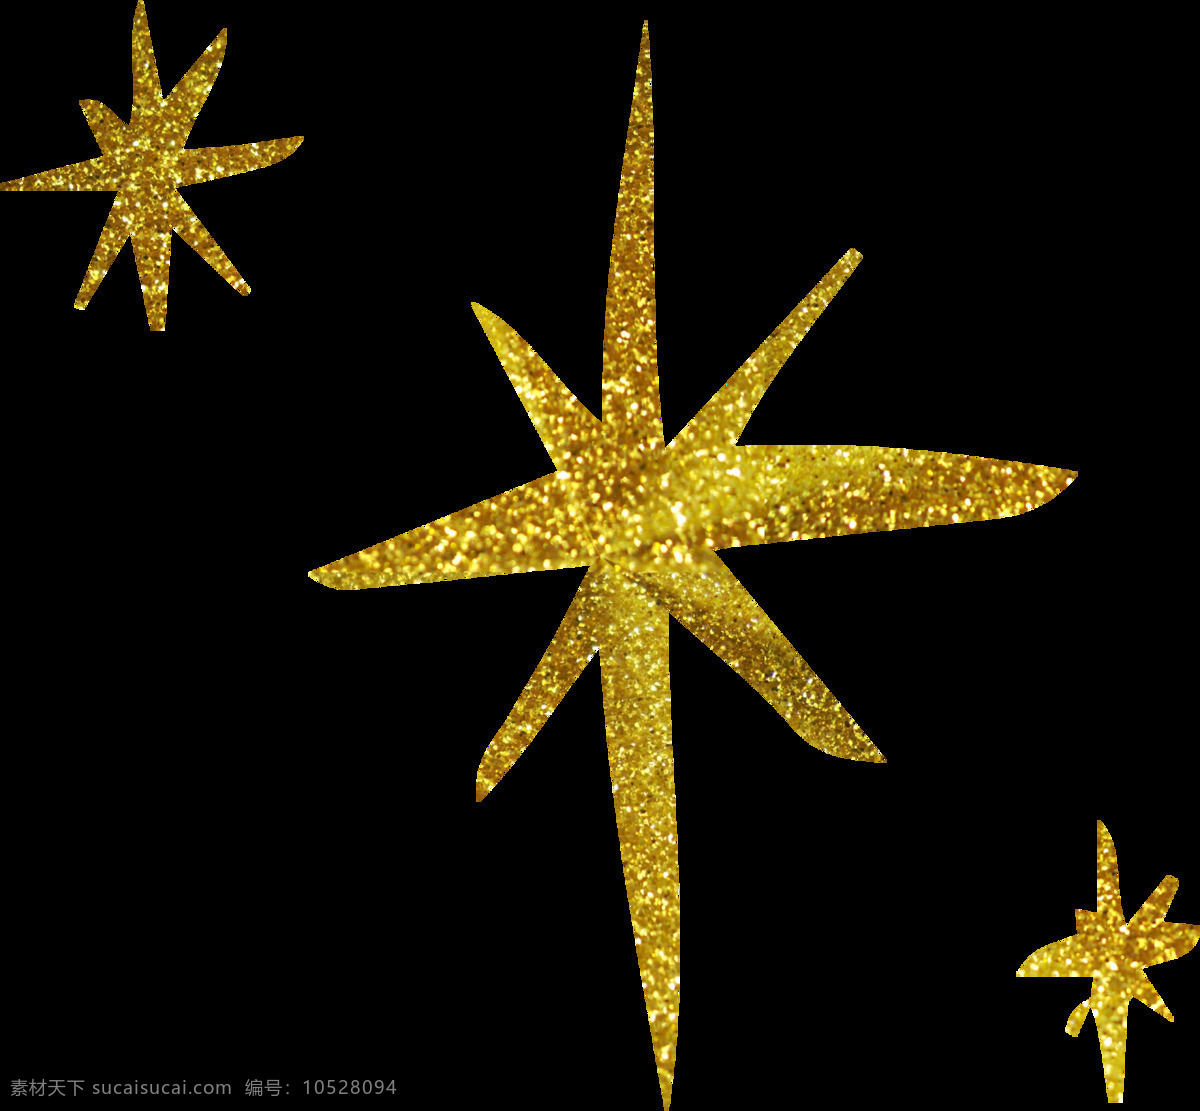 金色星形图片 金色星形 金色星形花边 金色边框 免扣金色星形 免扣金色边框 透明星形